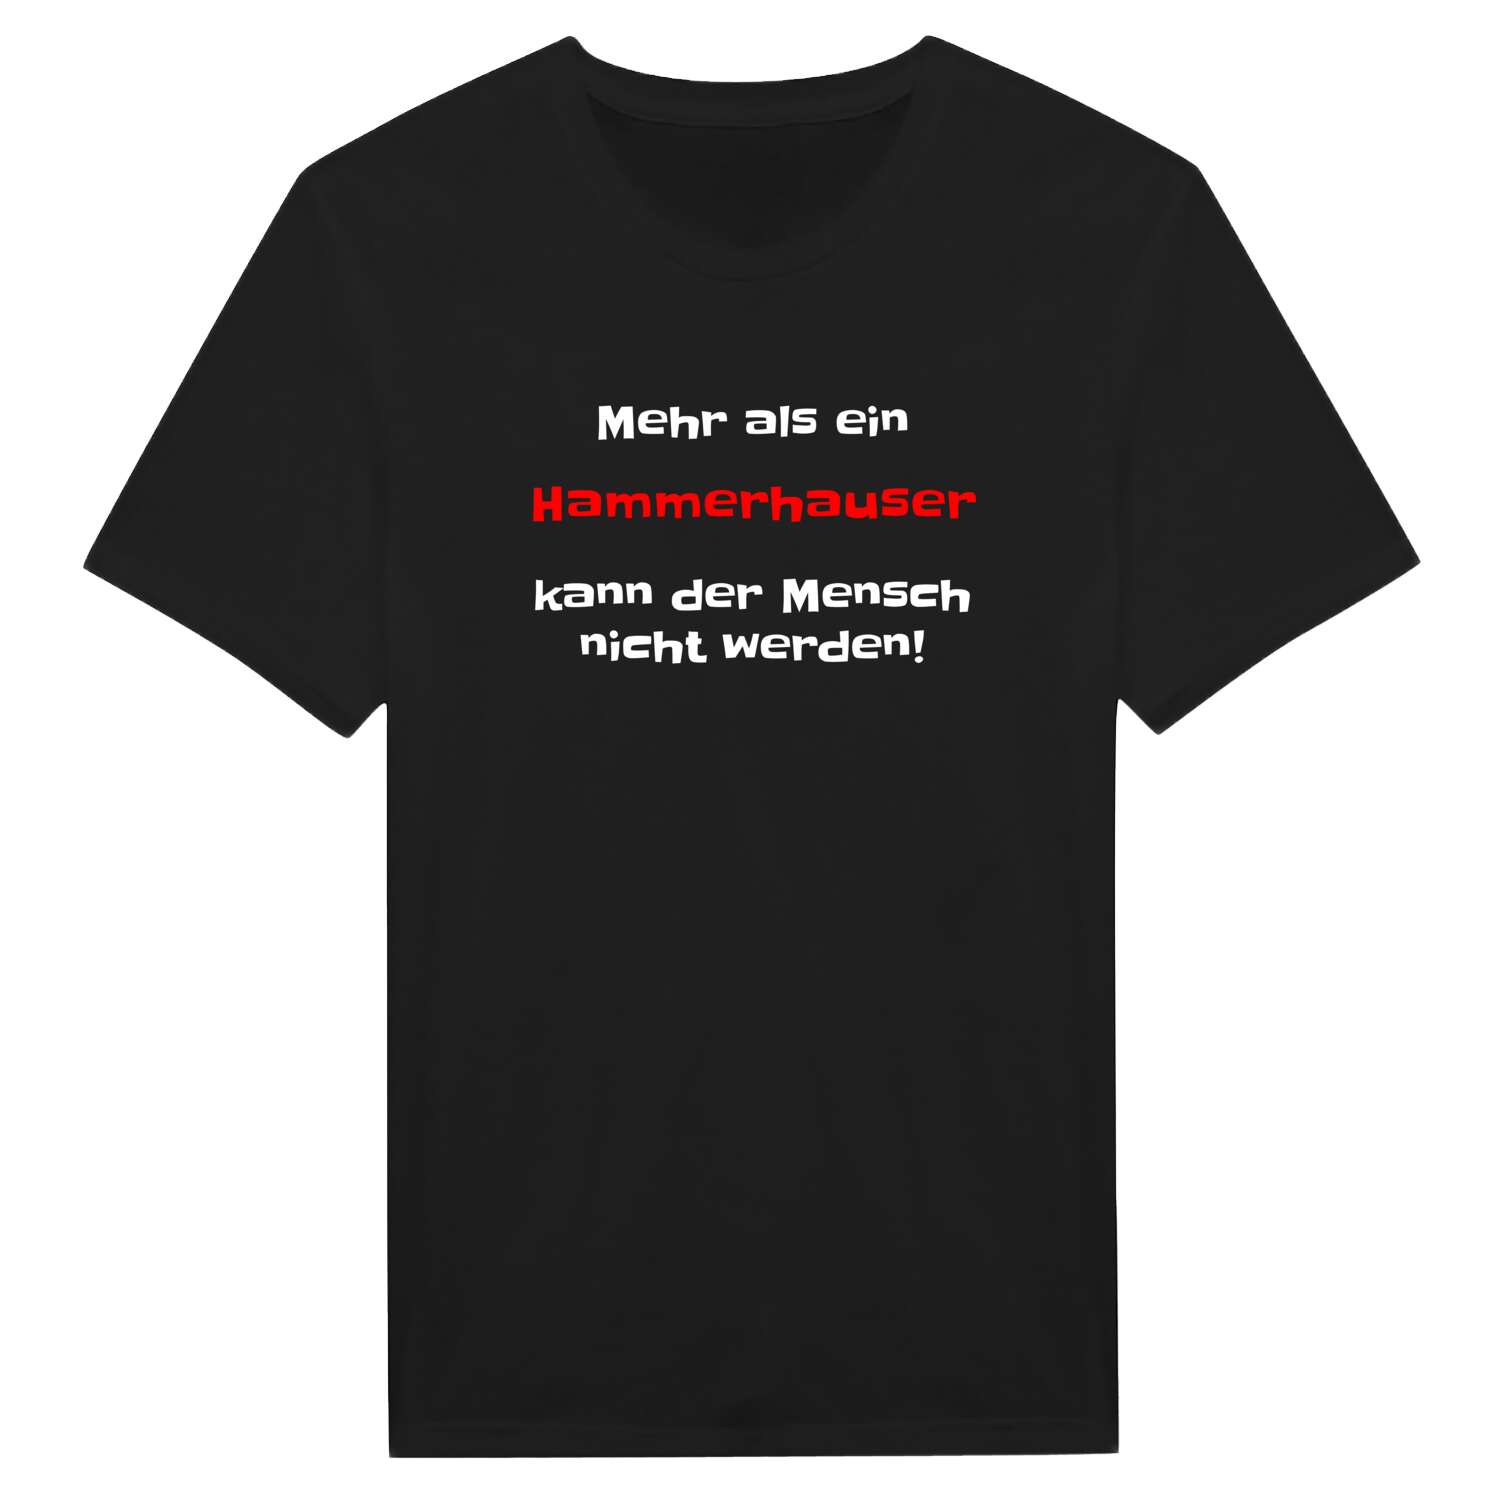 Hammerhaus T-Shirt »Mehr als ein«